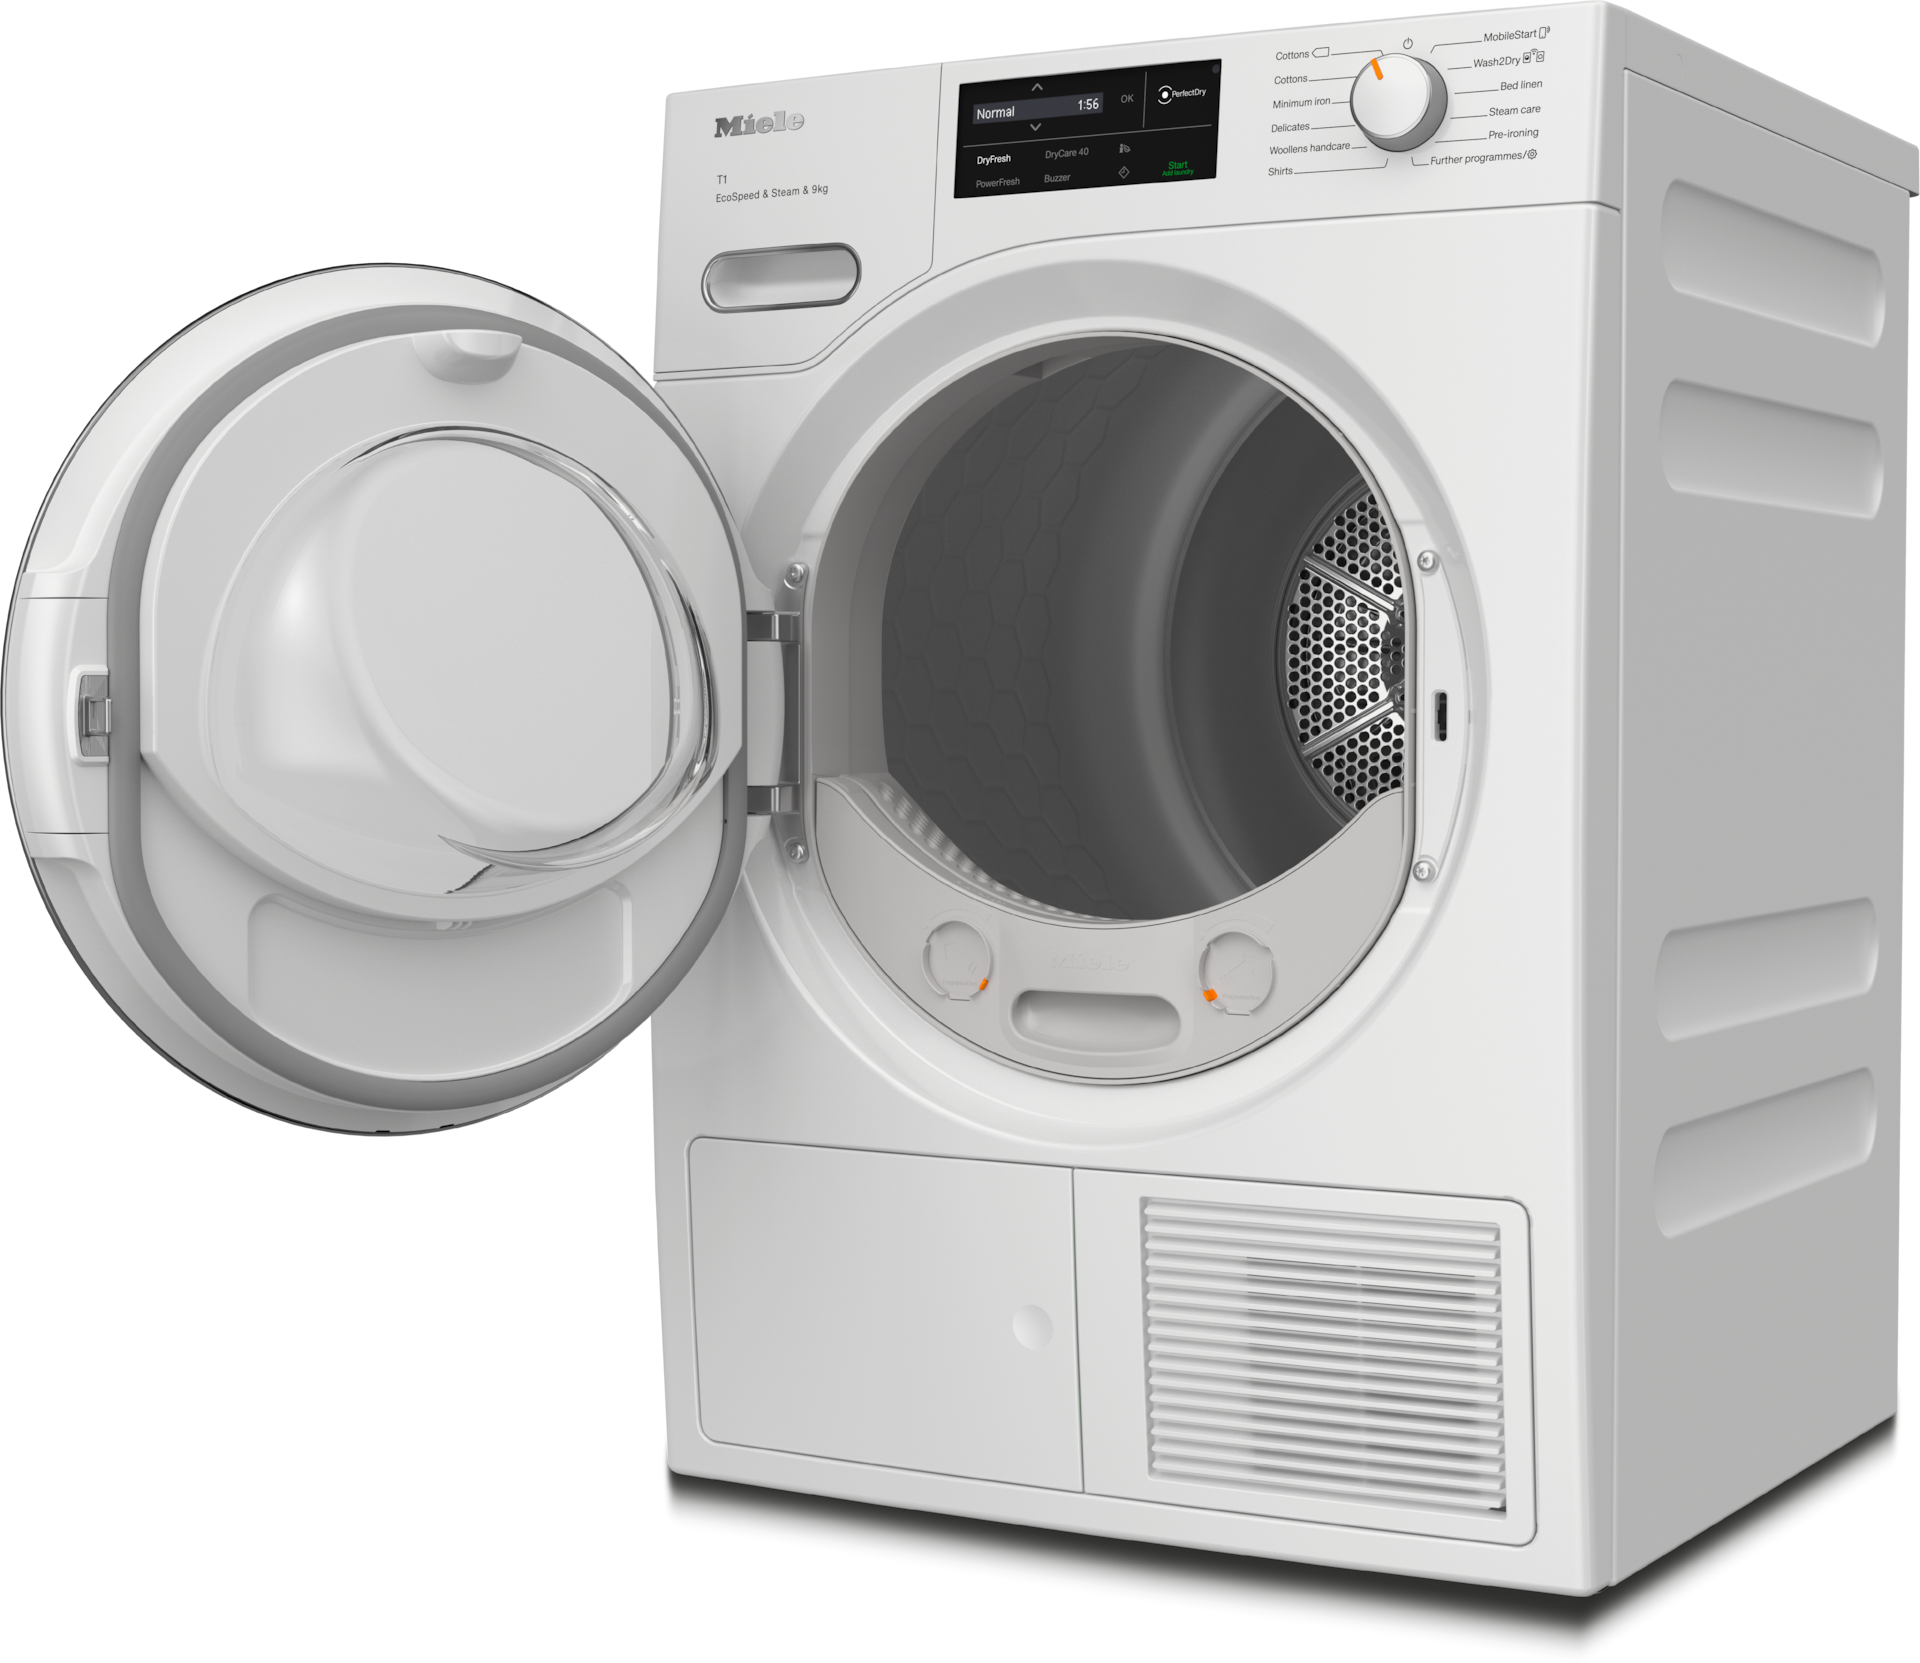 Tumble dryers - TWL780WP EcoSpeed&Steam&9kg Lotus white - 2